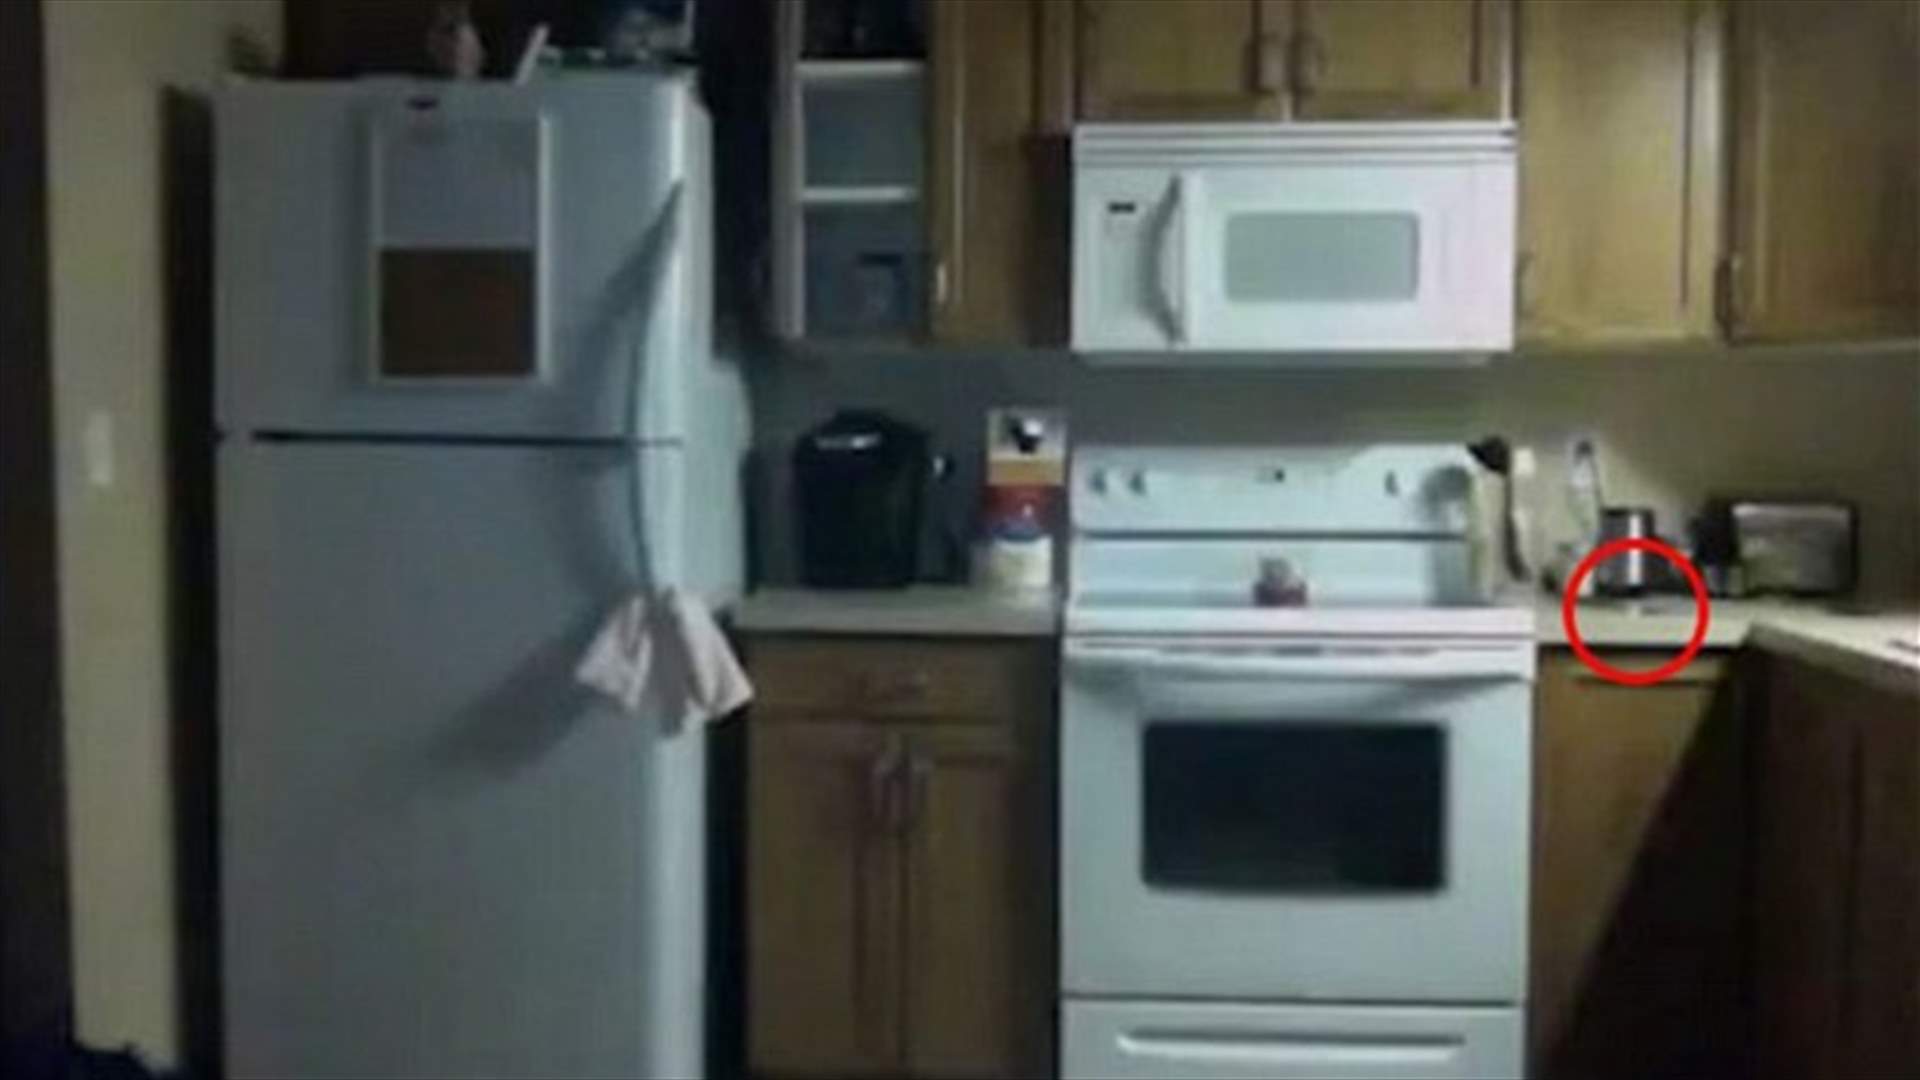 بالفيديو: وضع كاميرا مراقبة داخل المطبخ... فماذا التقطت بعد ليلة واحدة؟